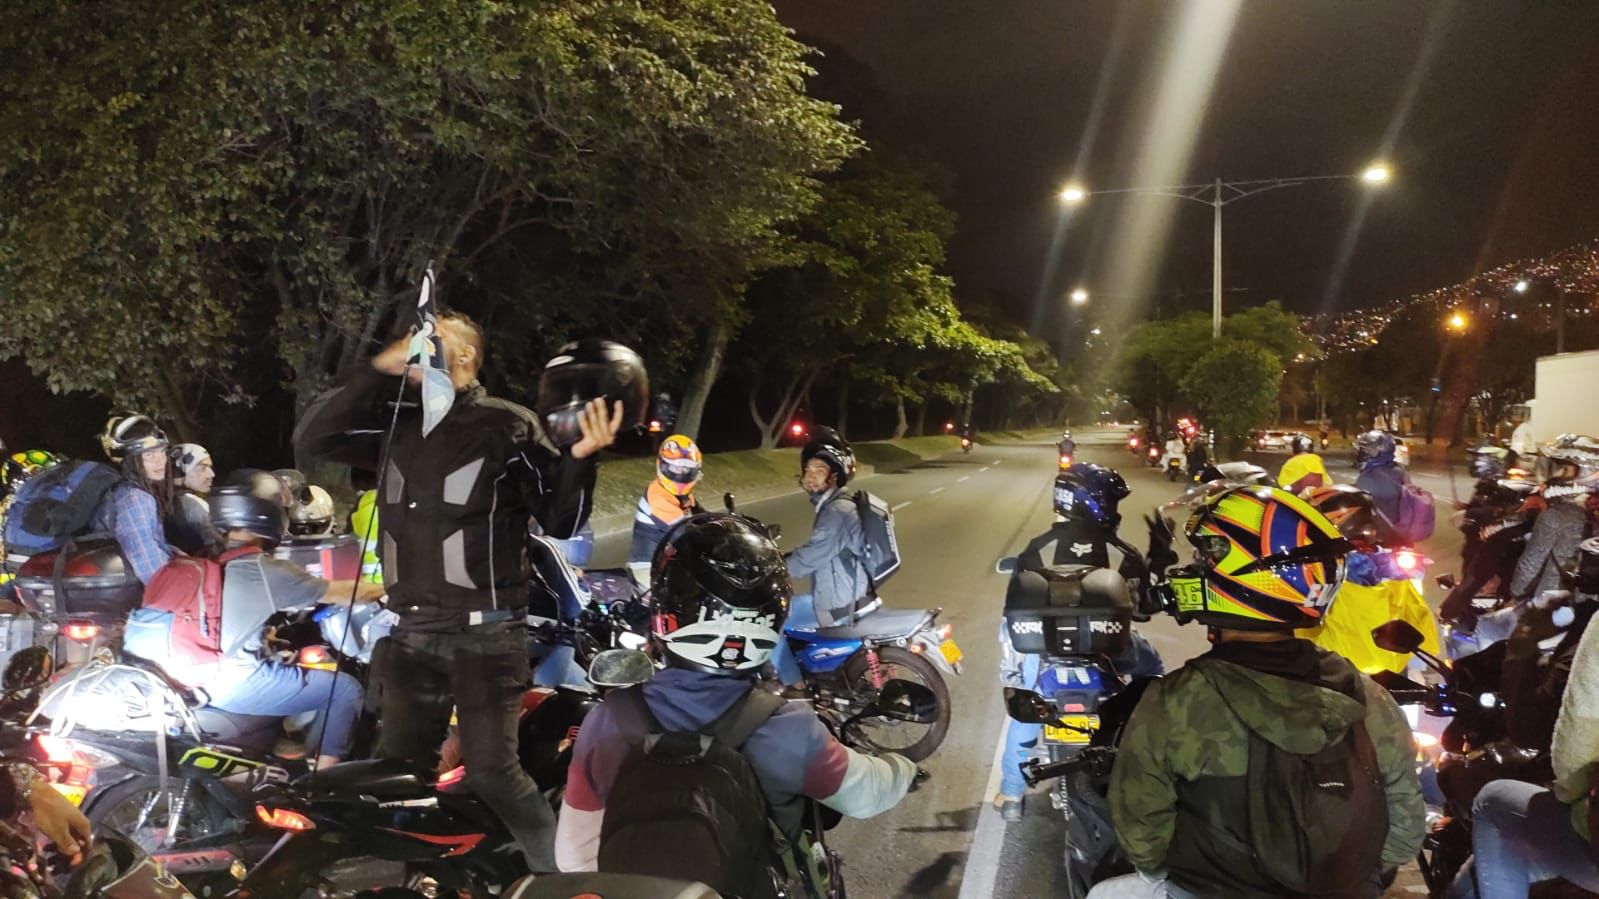 En Medellín, durante la manifestación se sumaron unos 200 motociclistas que hicieron una movilización pacífica Foto: Twitter @DenunciasAntio2